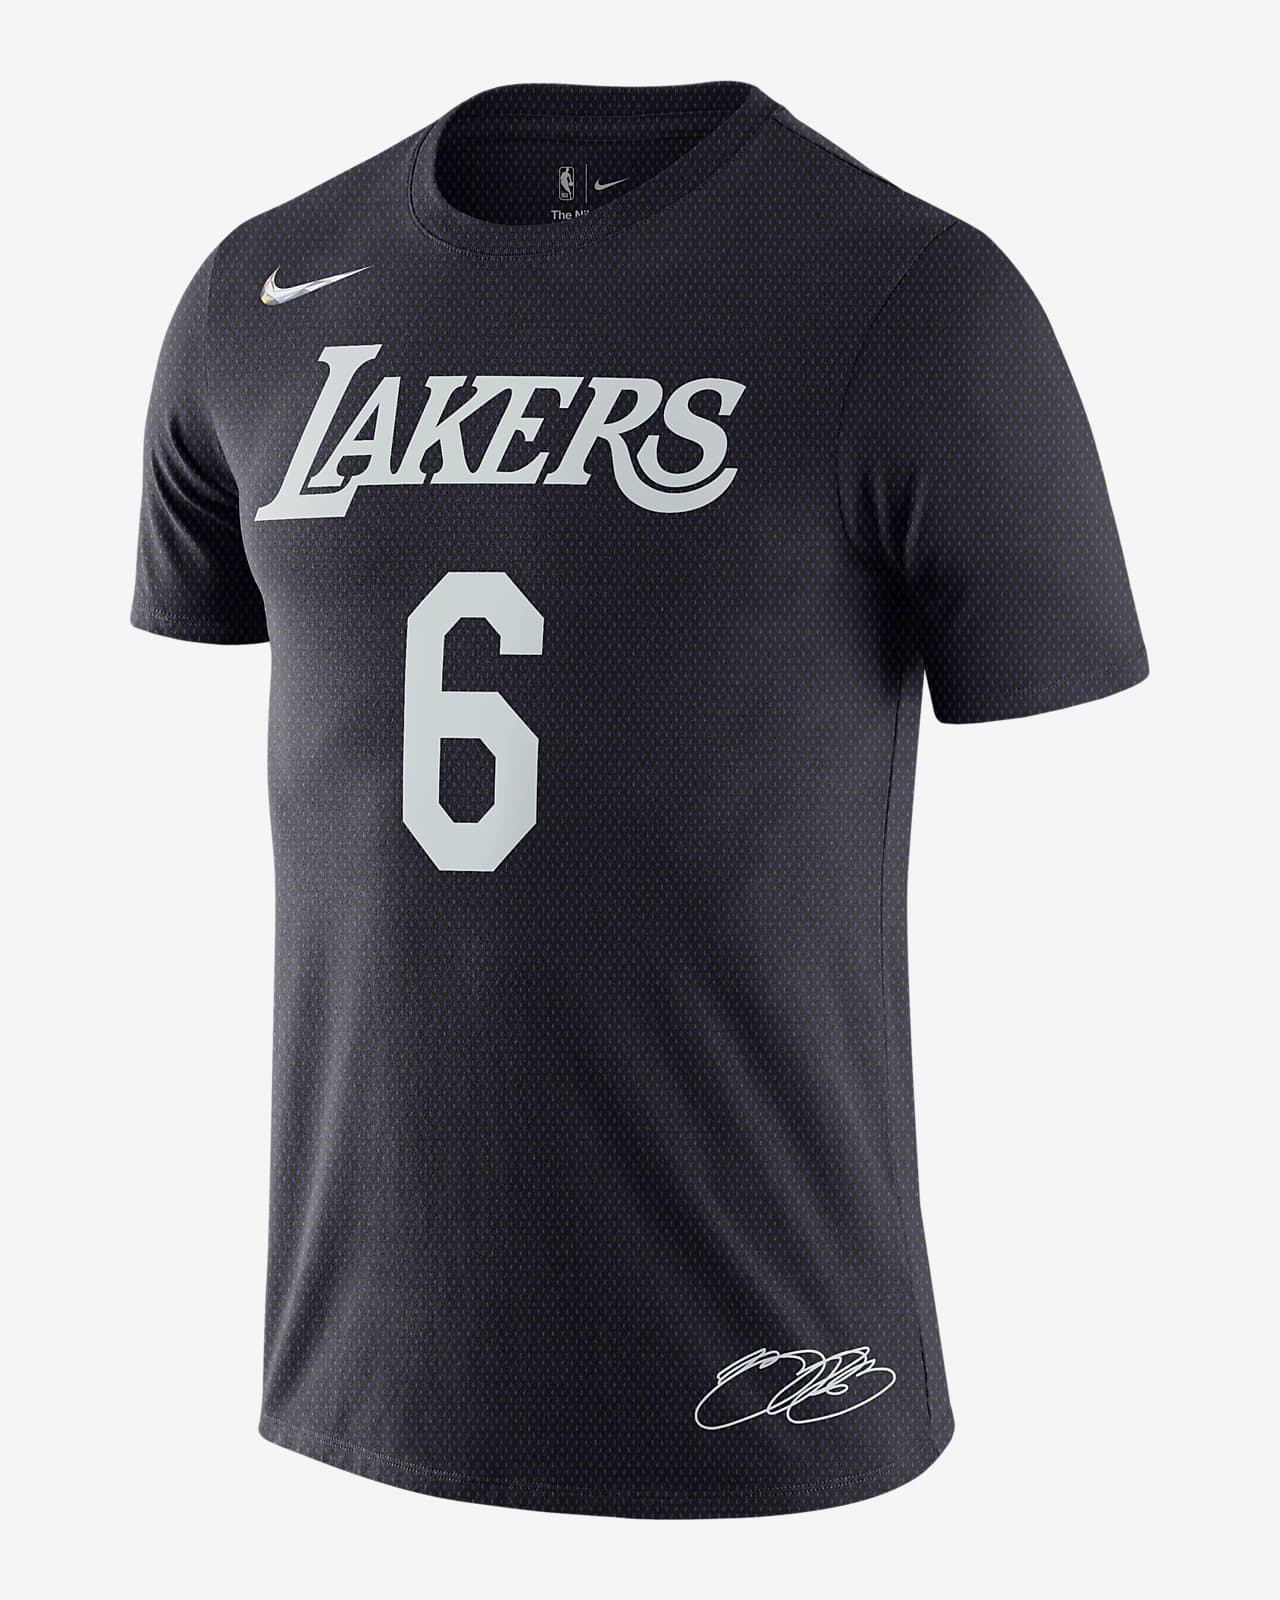 LeBron James Lakers Men's Nike NBA T-Shirt